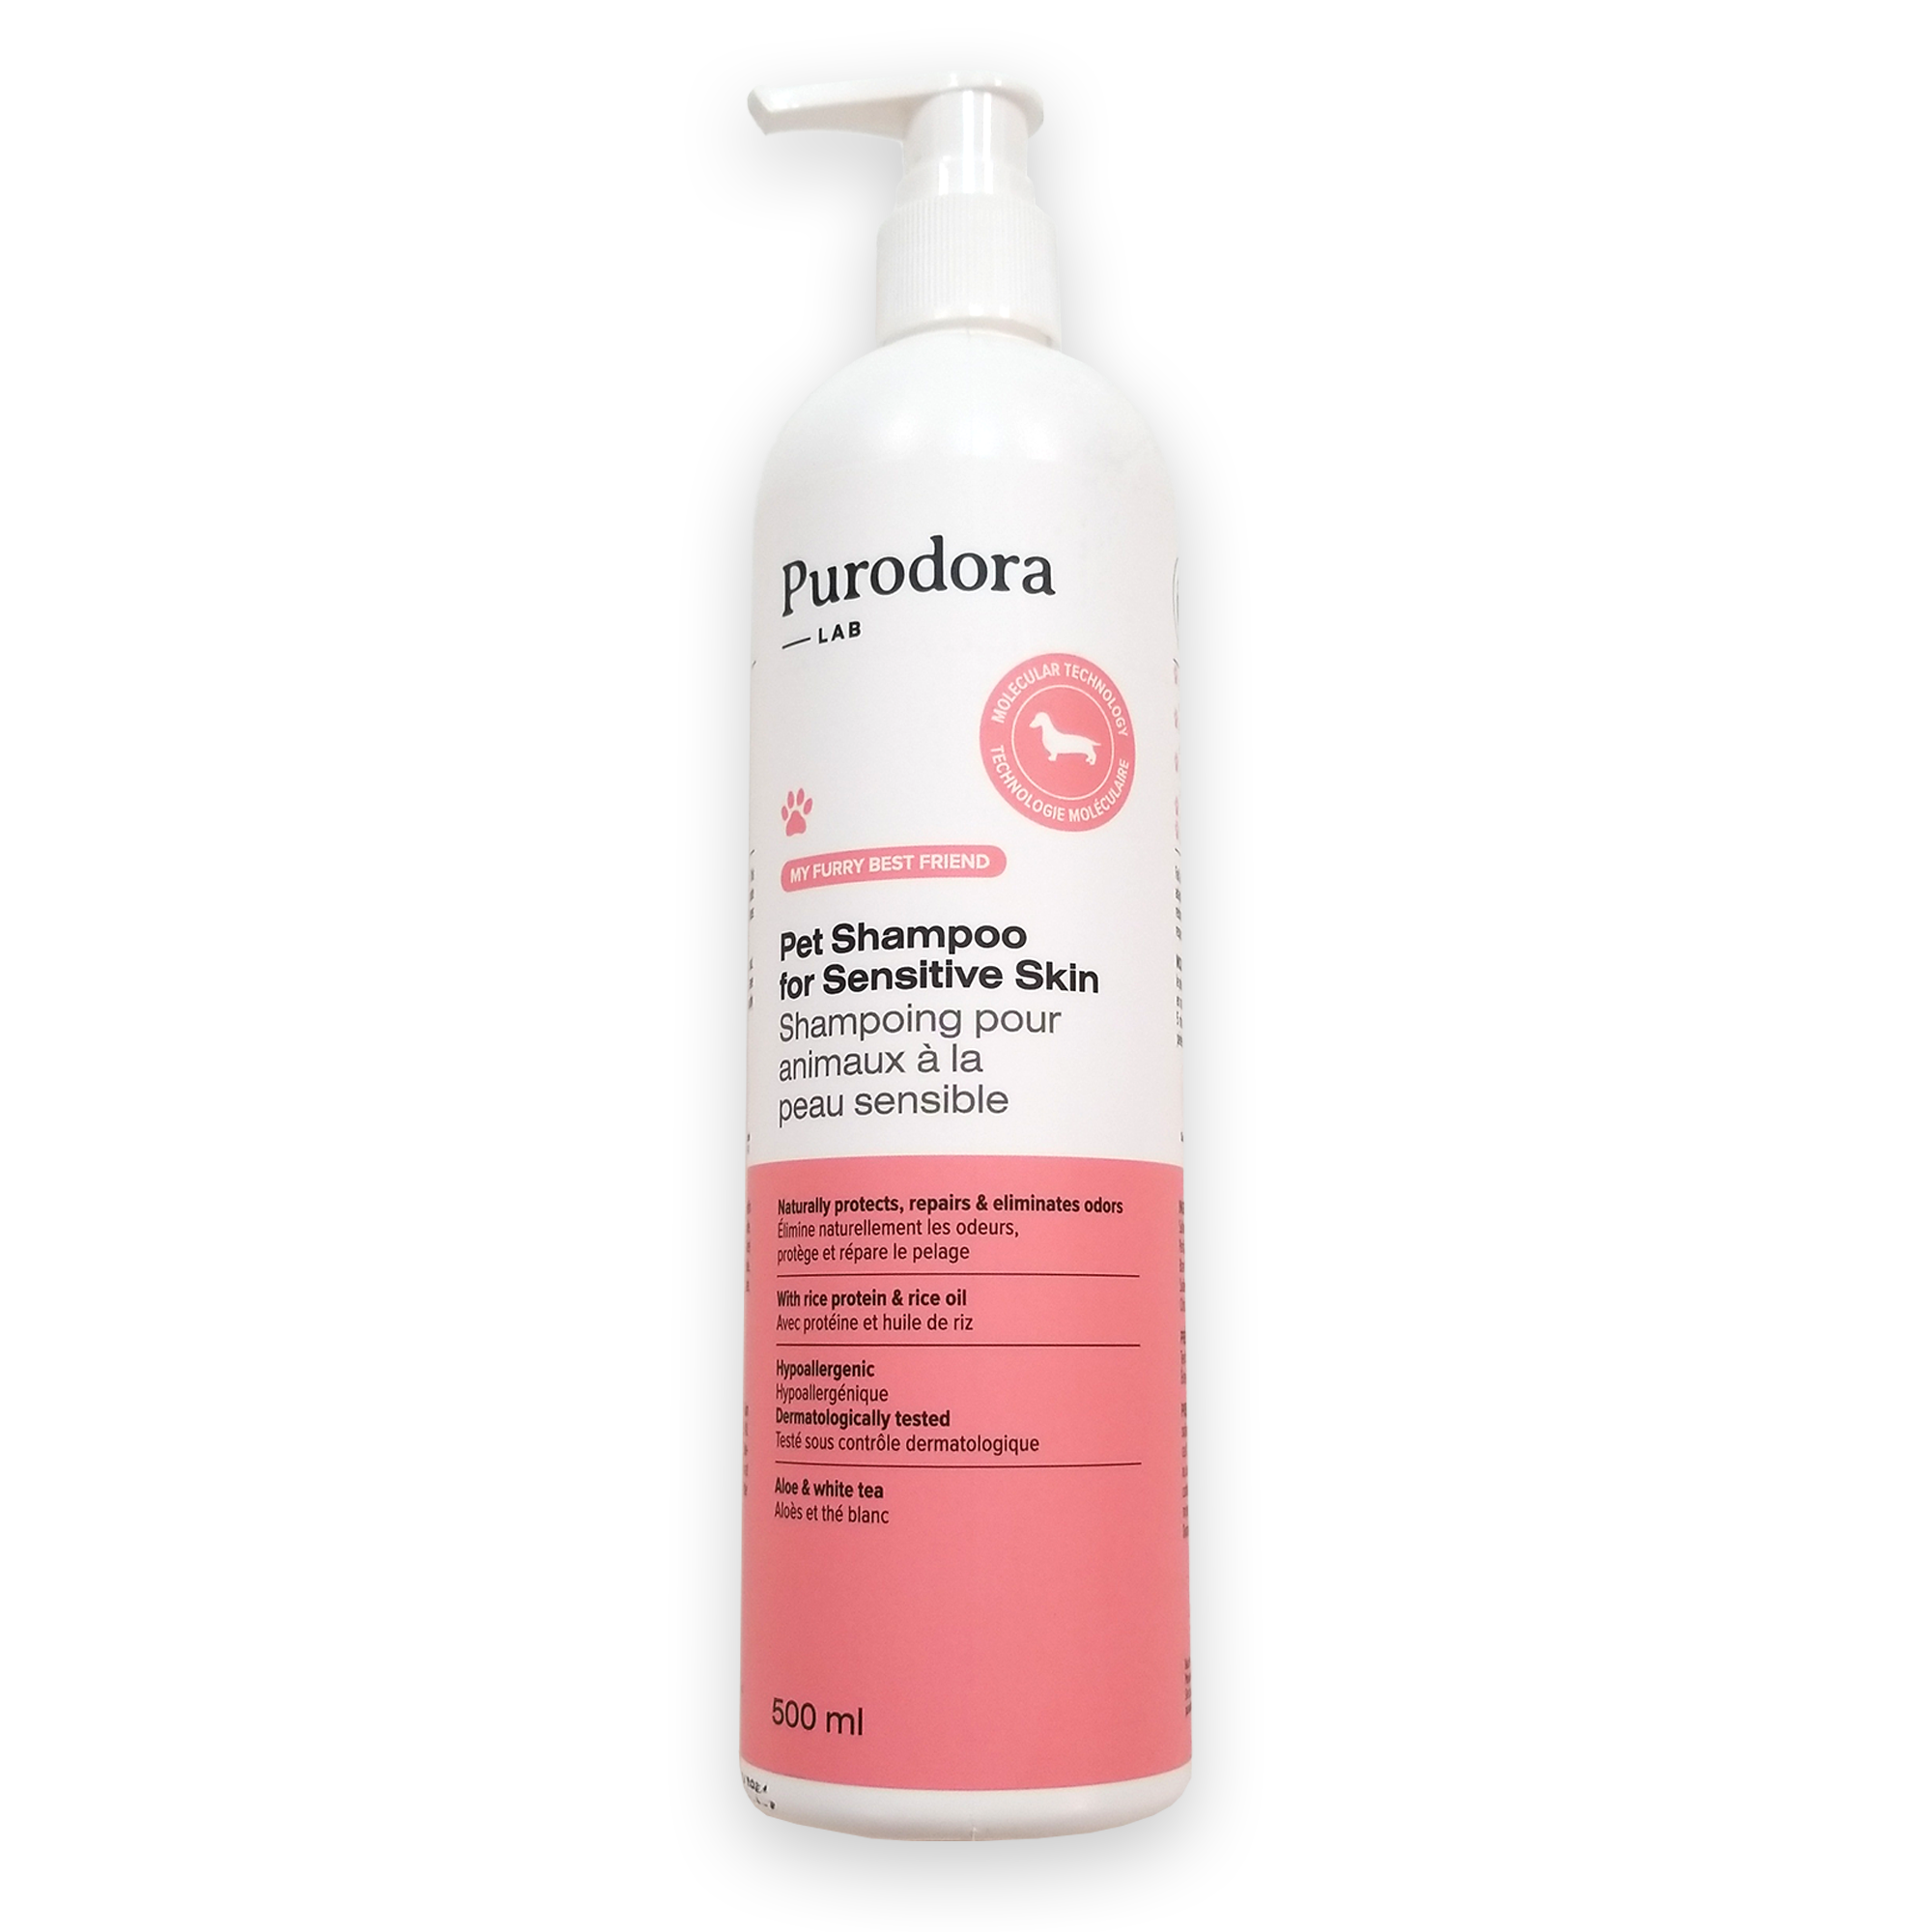 Purodora Pet Shampoo for Sensitive Skin Safe For Family & Pets